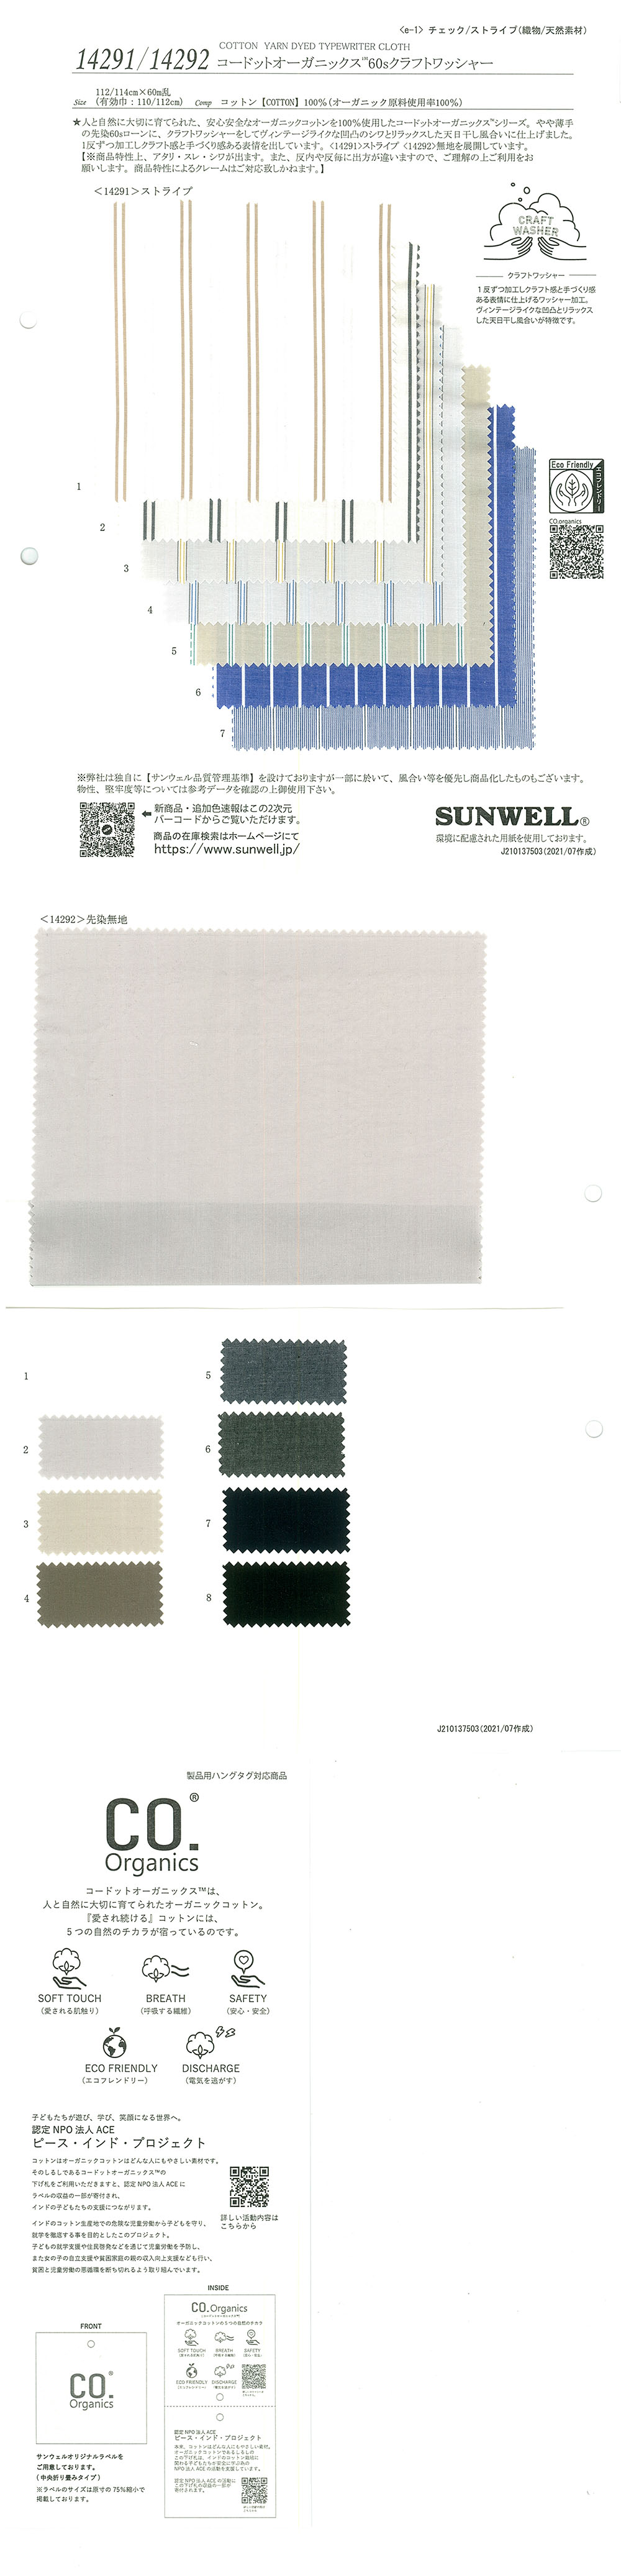 14291 Cordot Organics (R) 60 Listra Artesanal De Fio único[Têxtil / Tecido] SUNWELL